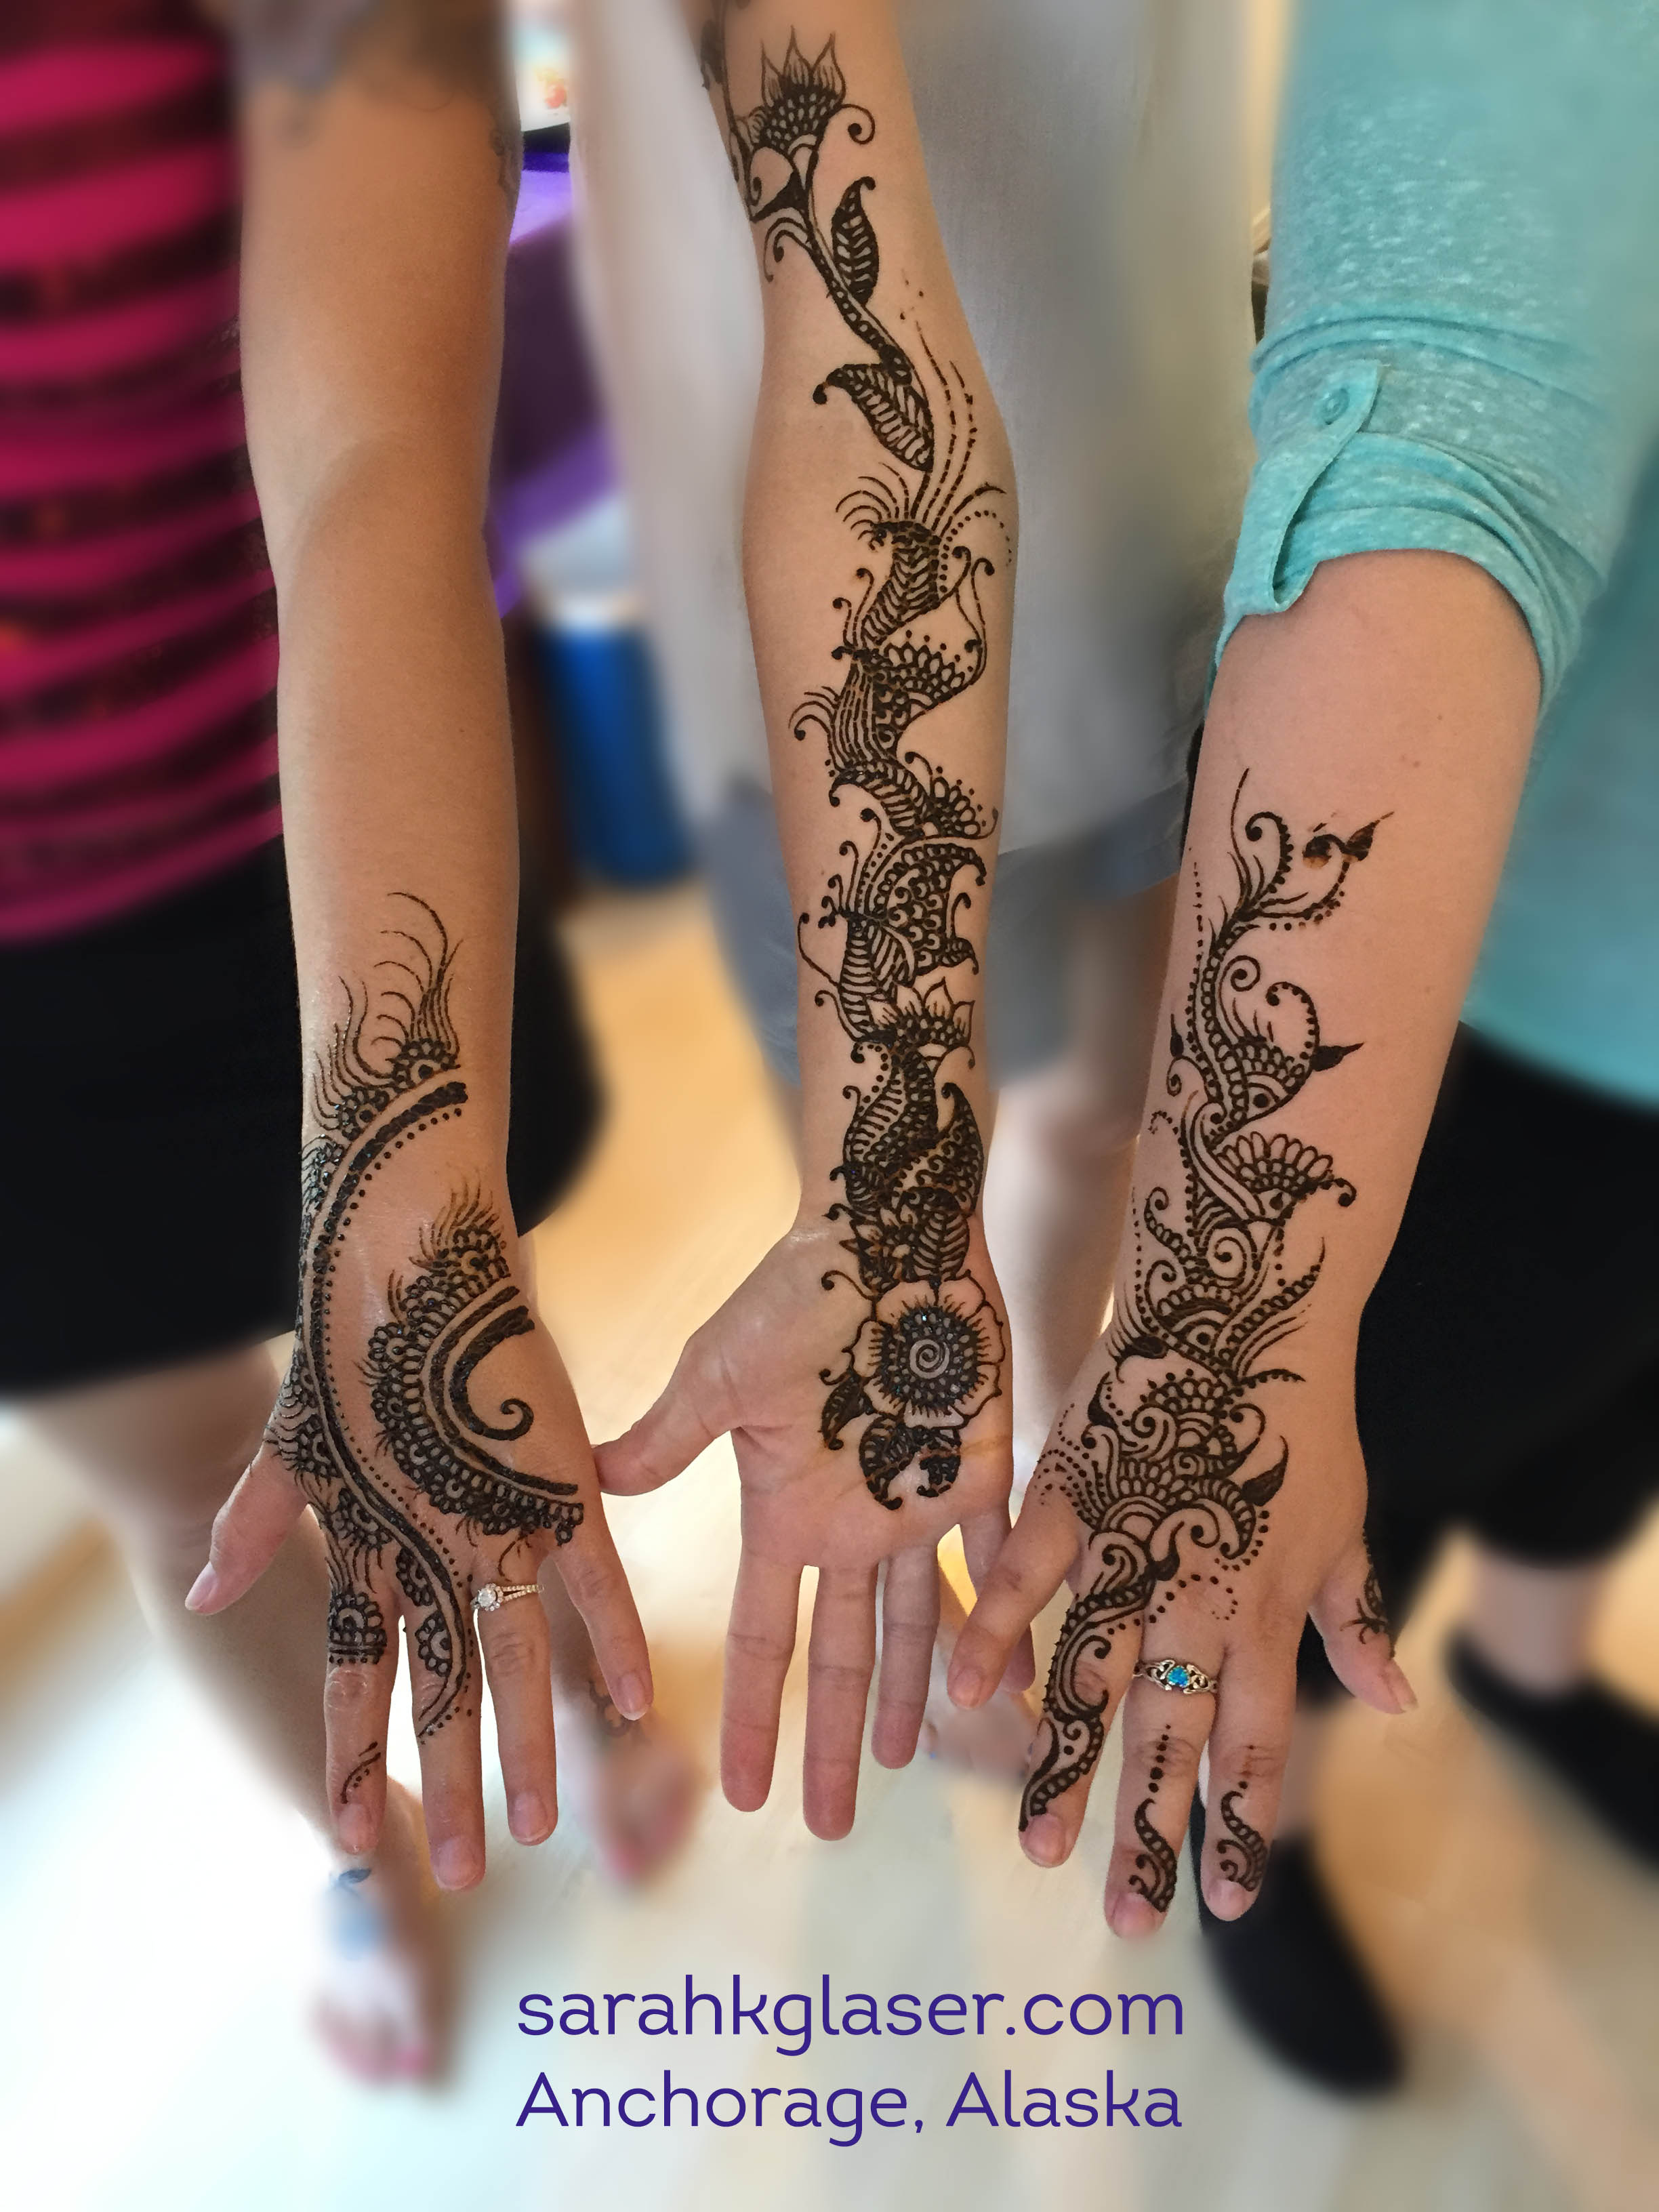 Fancy hand | Henna designs hand, Henna designs, Henna tattoo designs